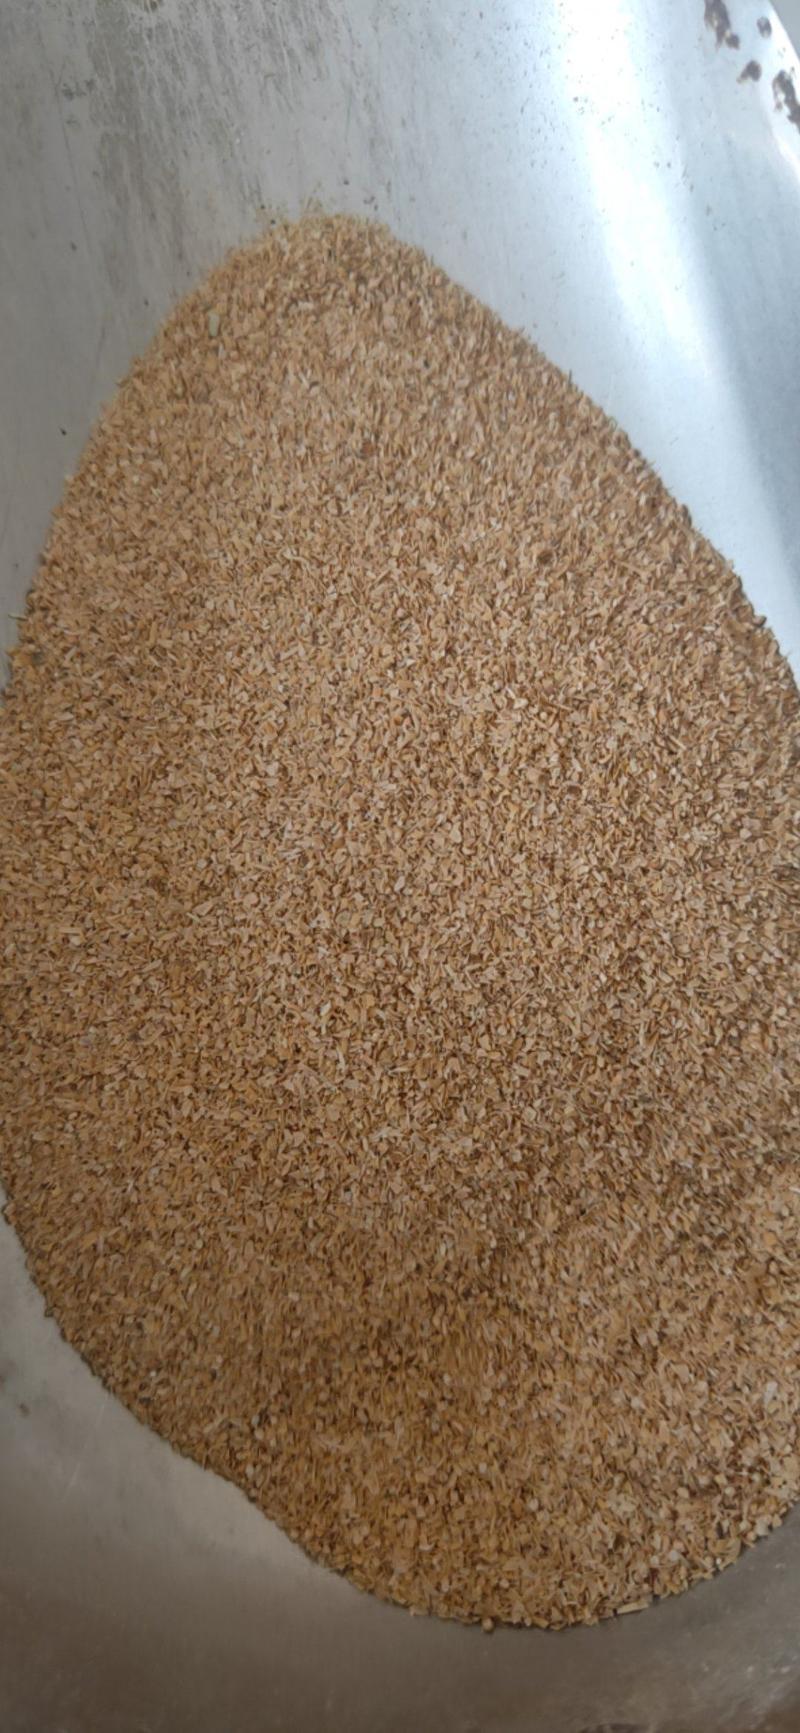 【精选好货】除尘稻壳稻壳粉厂家直销量大优惠品质保障包送货